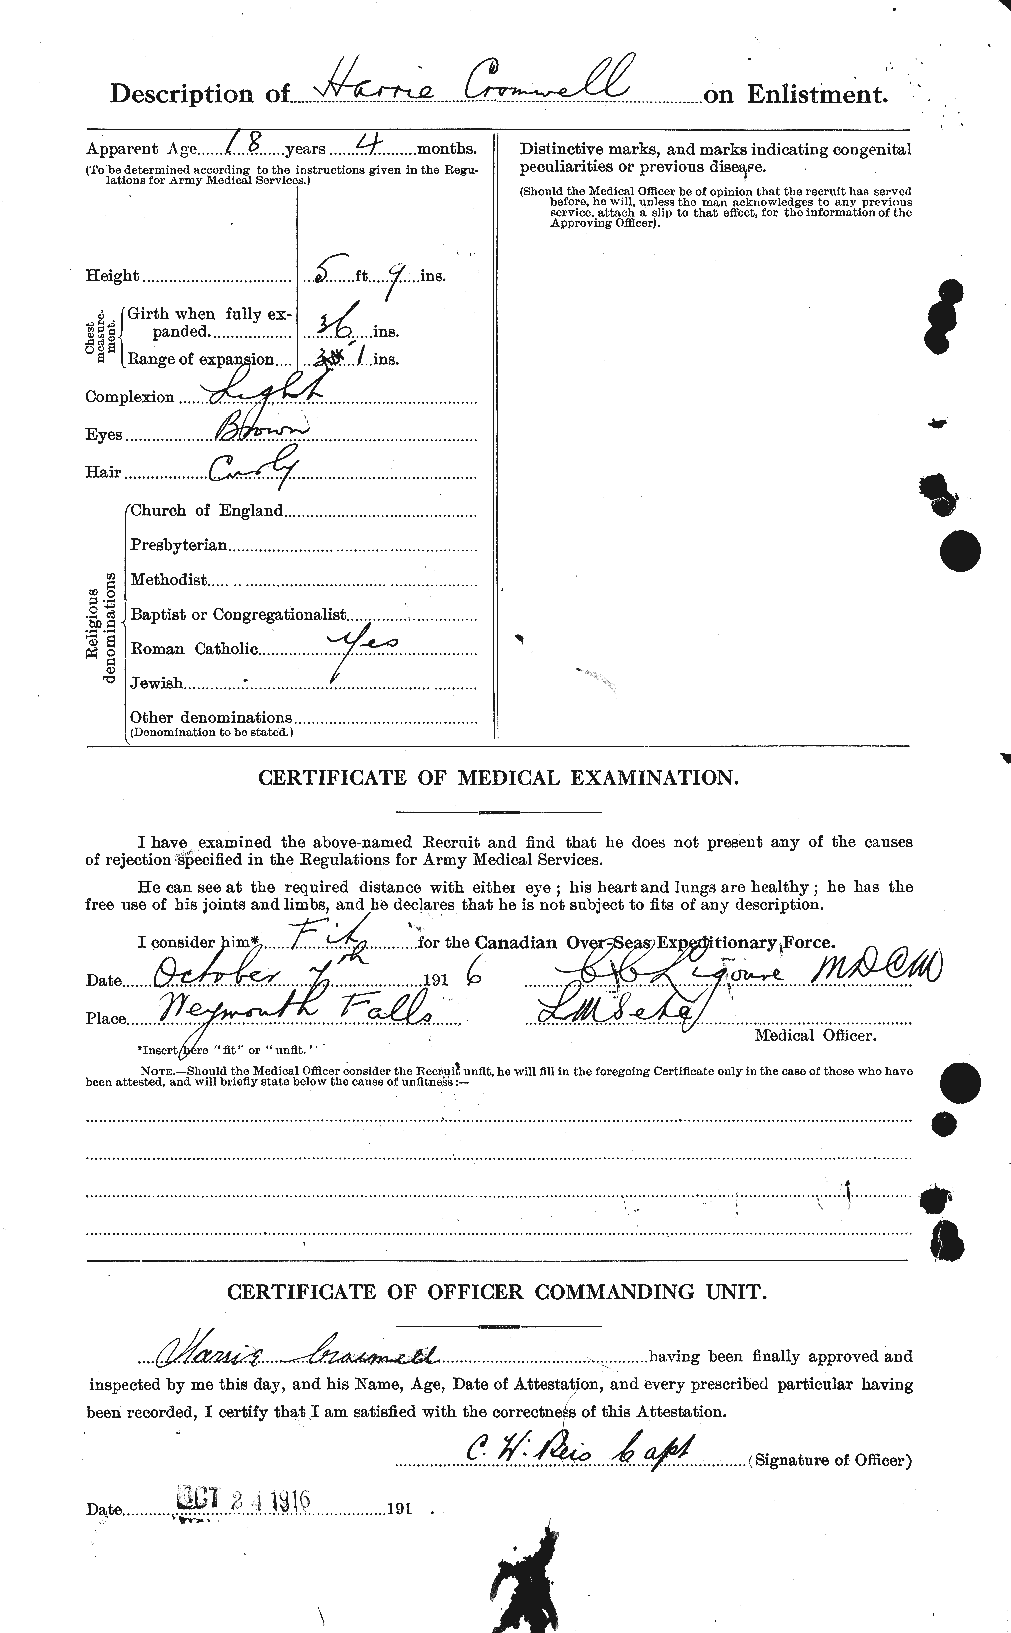 Dossiers du Personnel de la Première Guerre mondiale - CEC 064928b